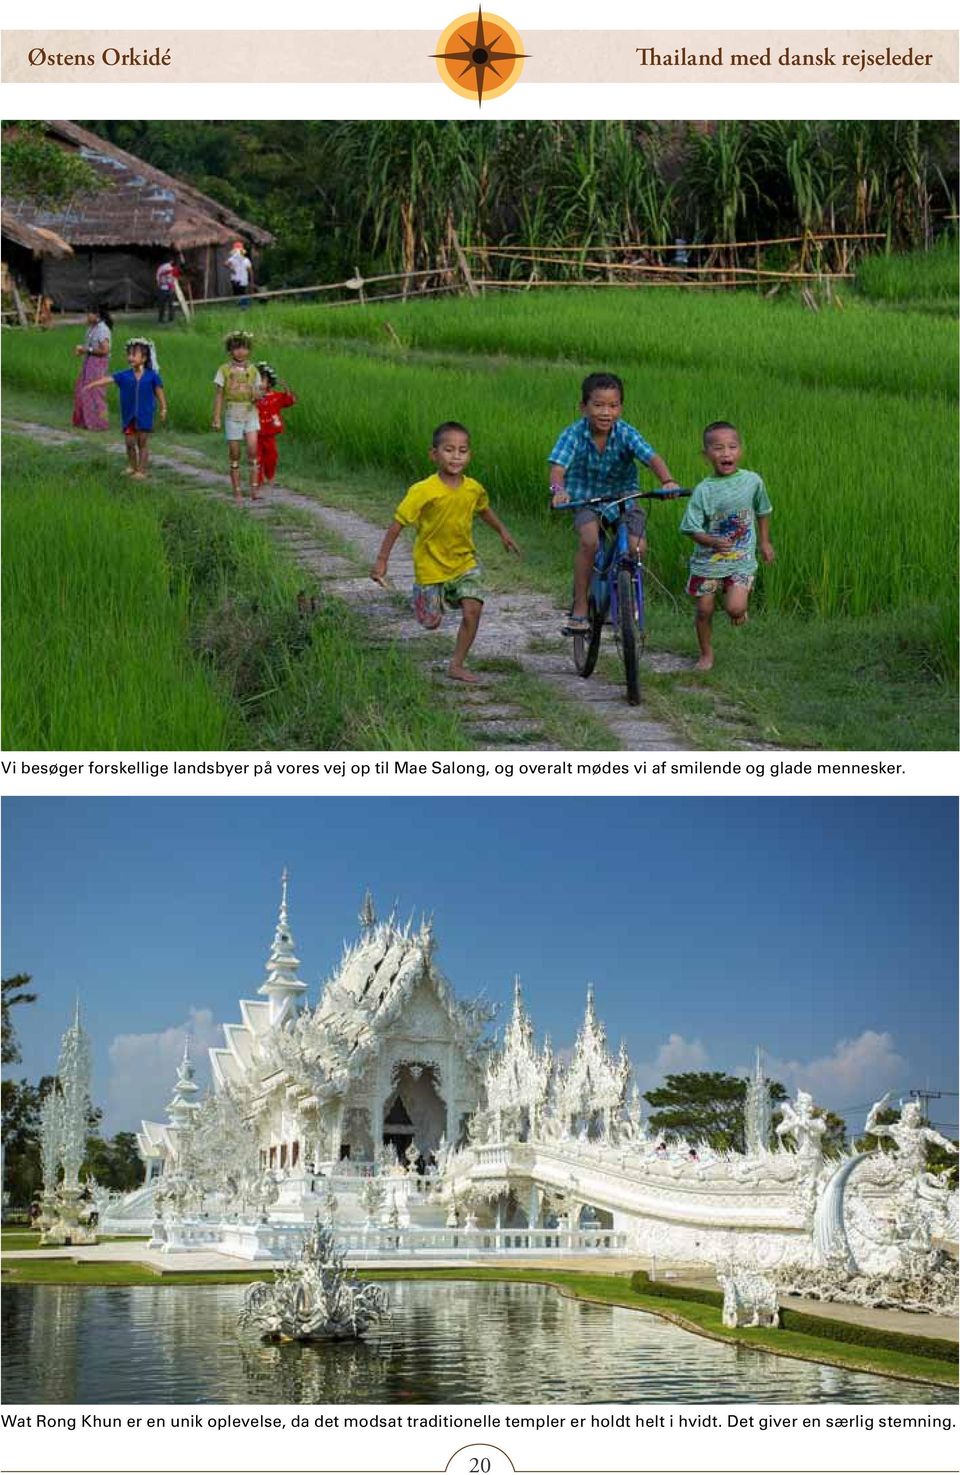 Wat Rong Khun er en unik oplevelse, da det modsat